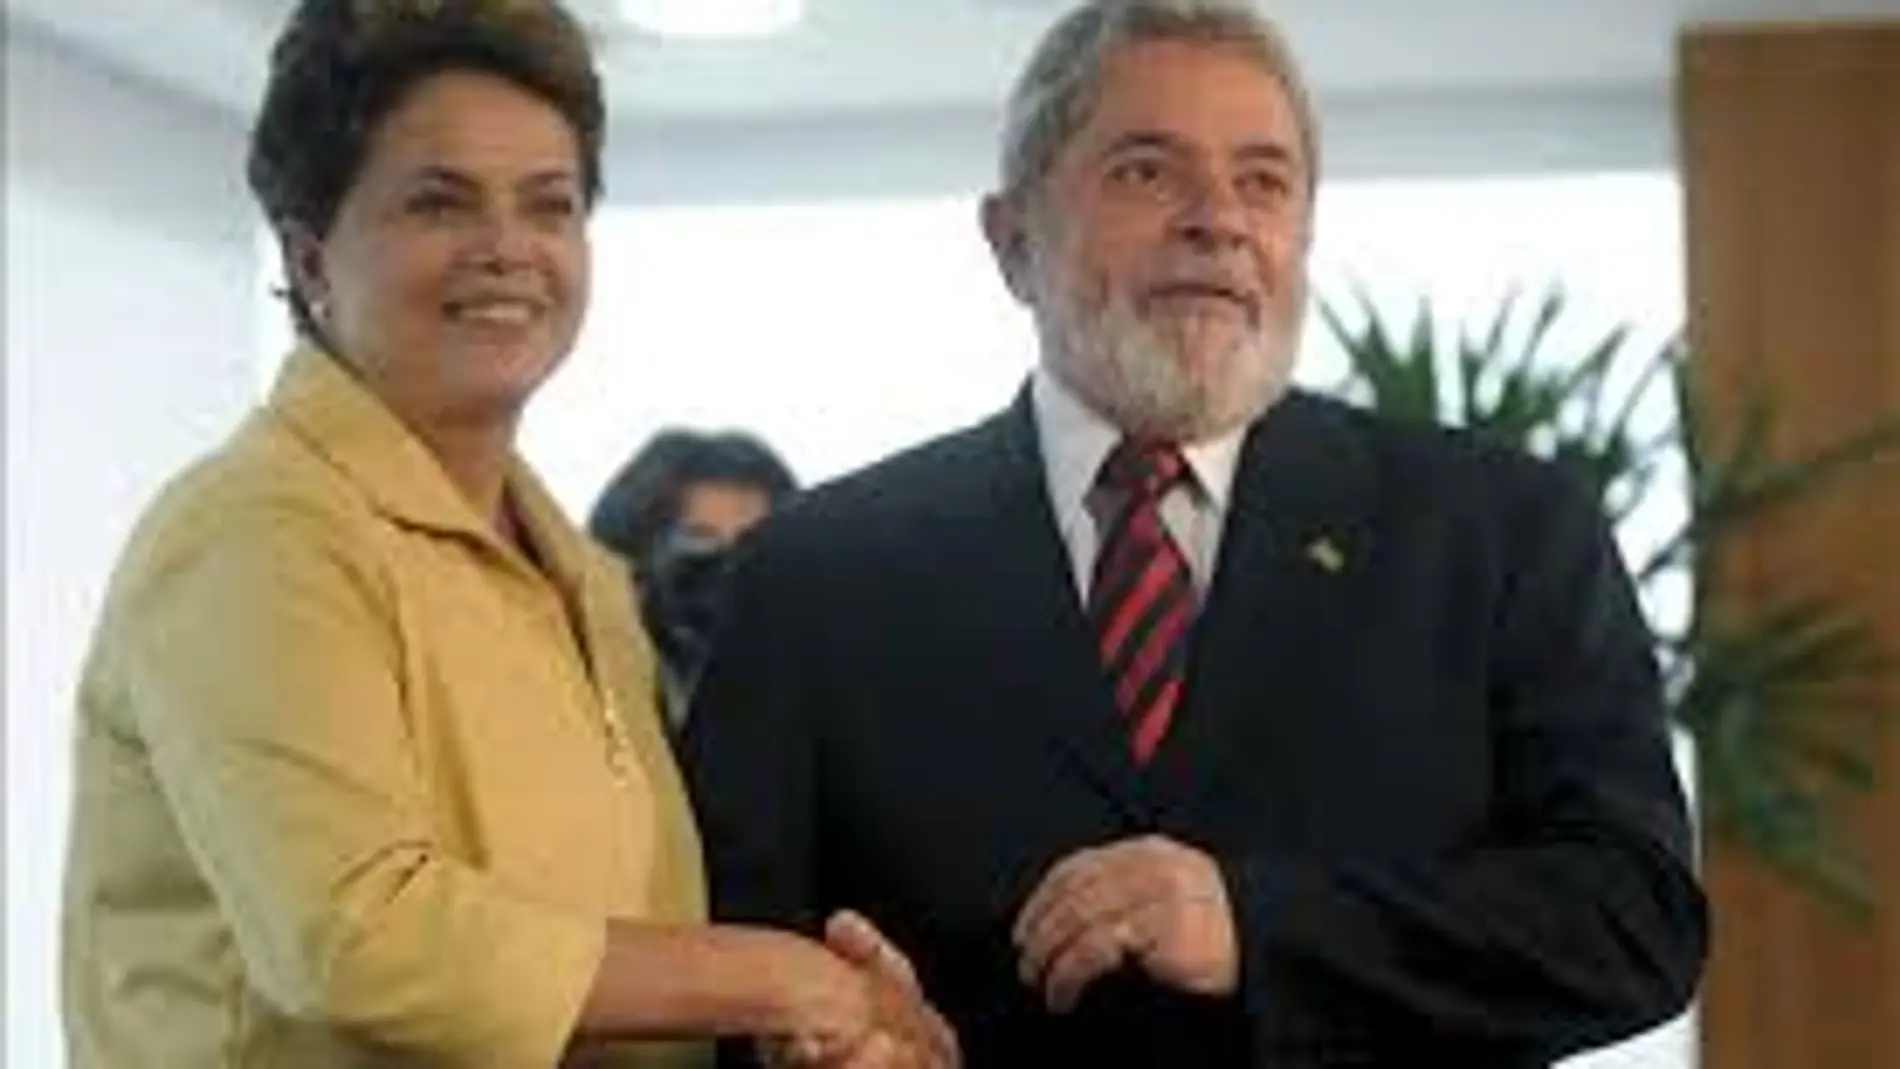 Una comisión parlamentaria exculpa a Rousseff y Lula del caso Petrobras